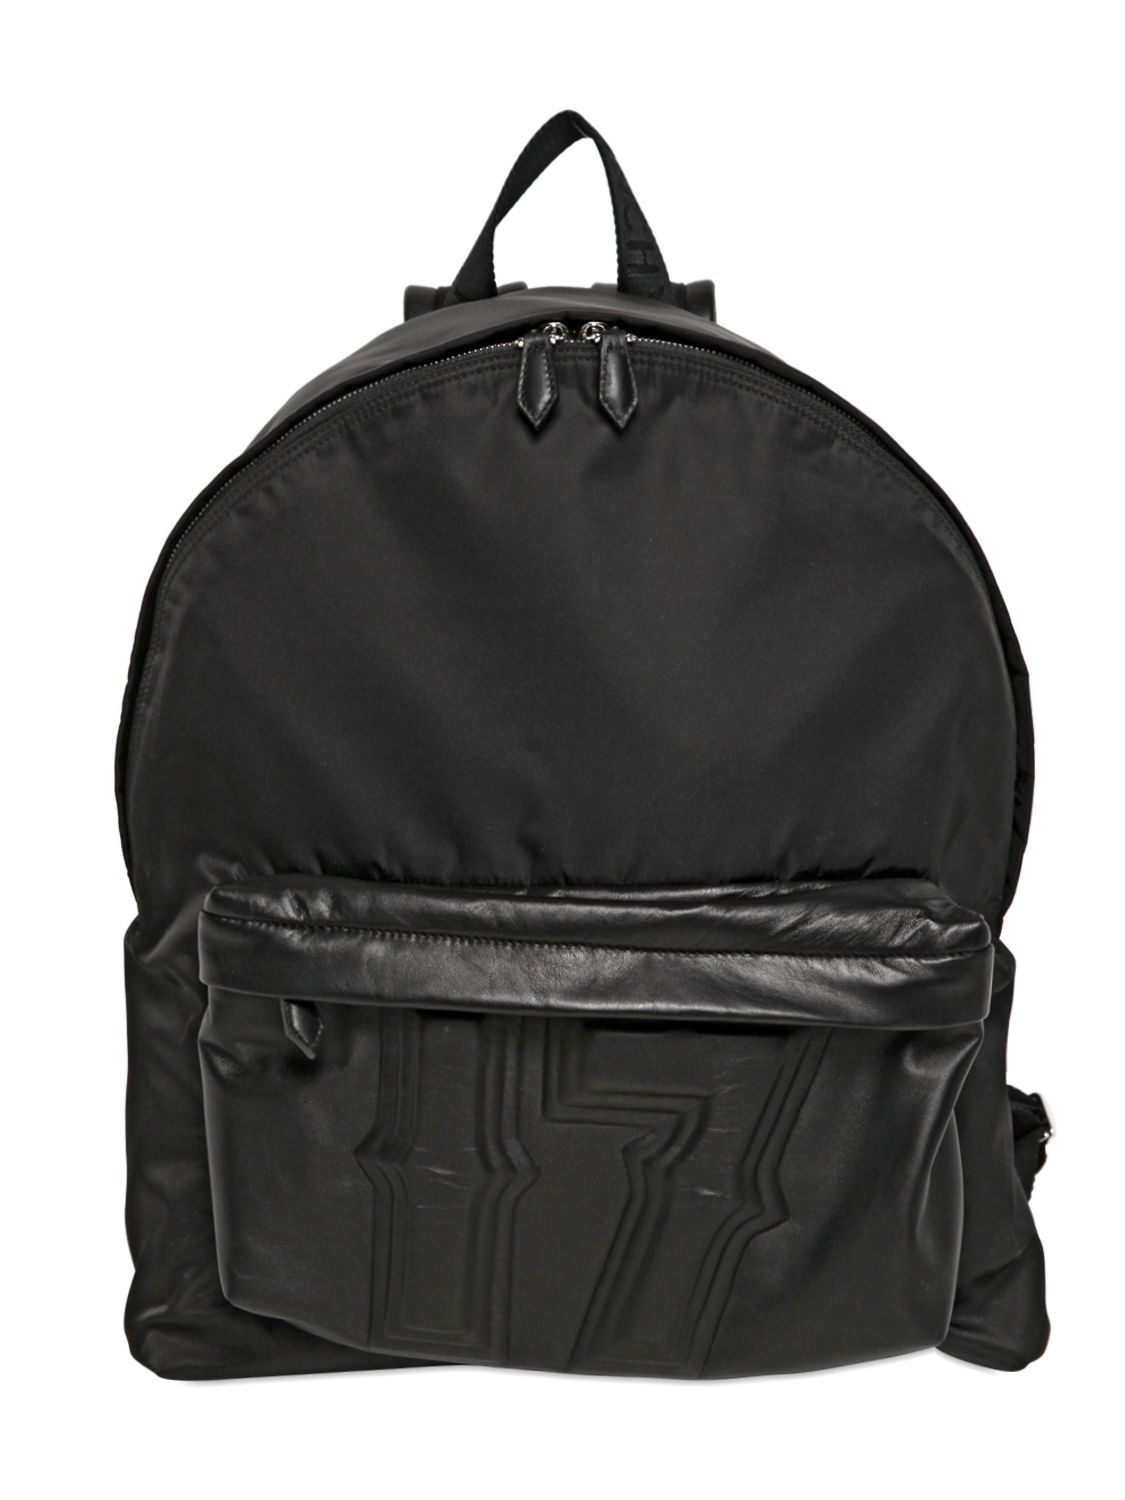 backpack004